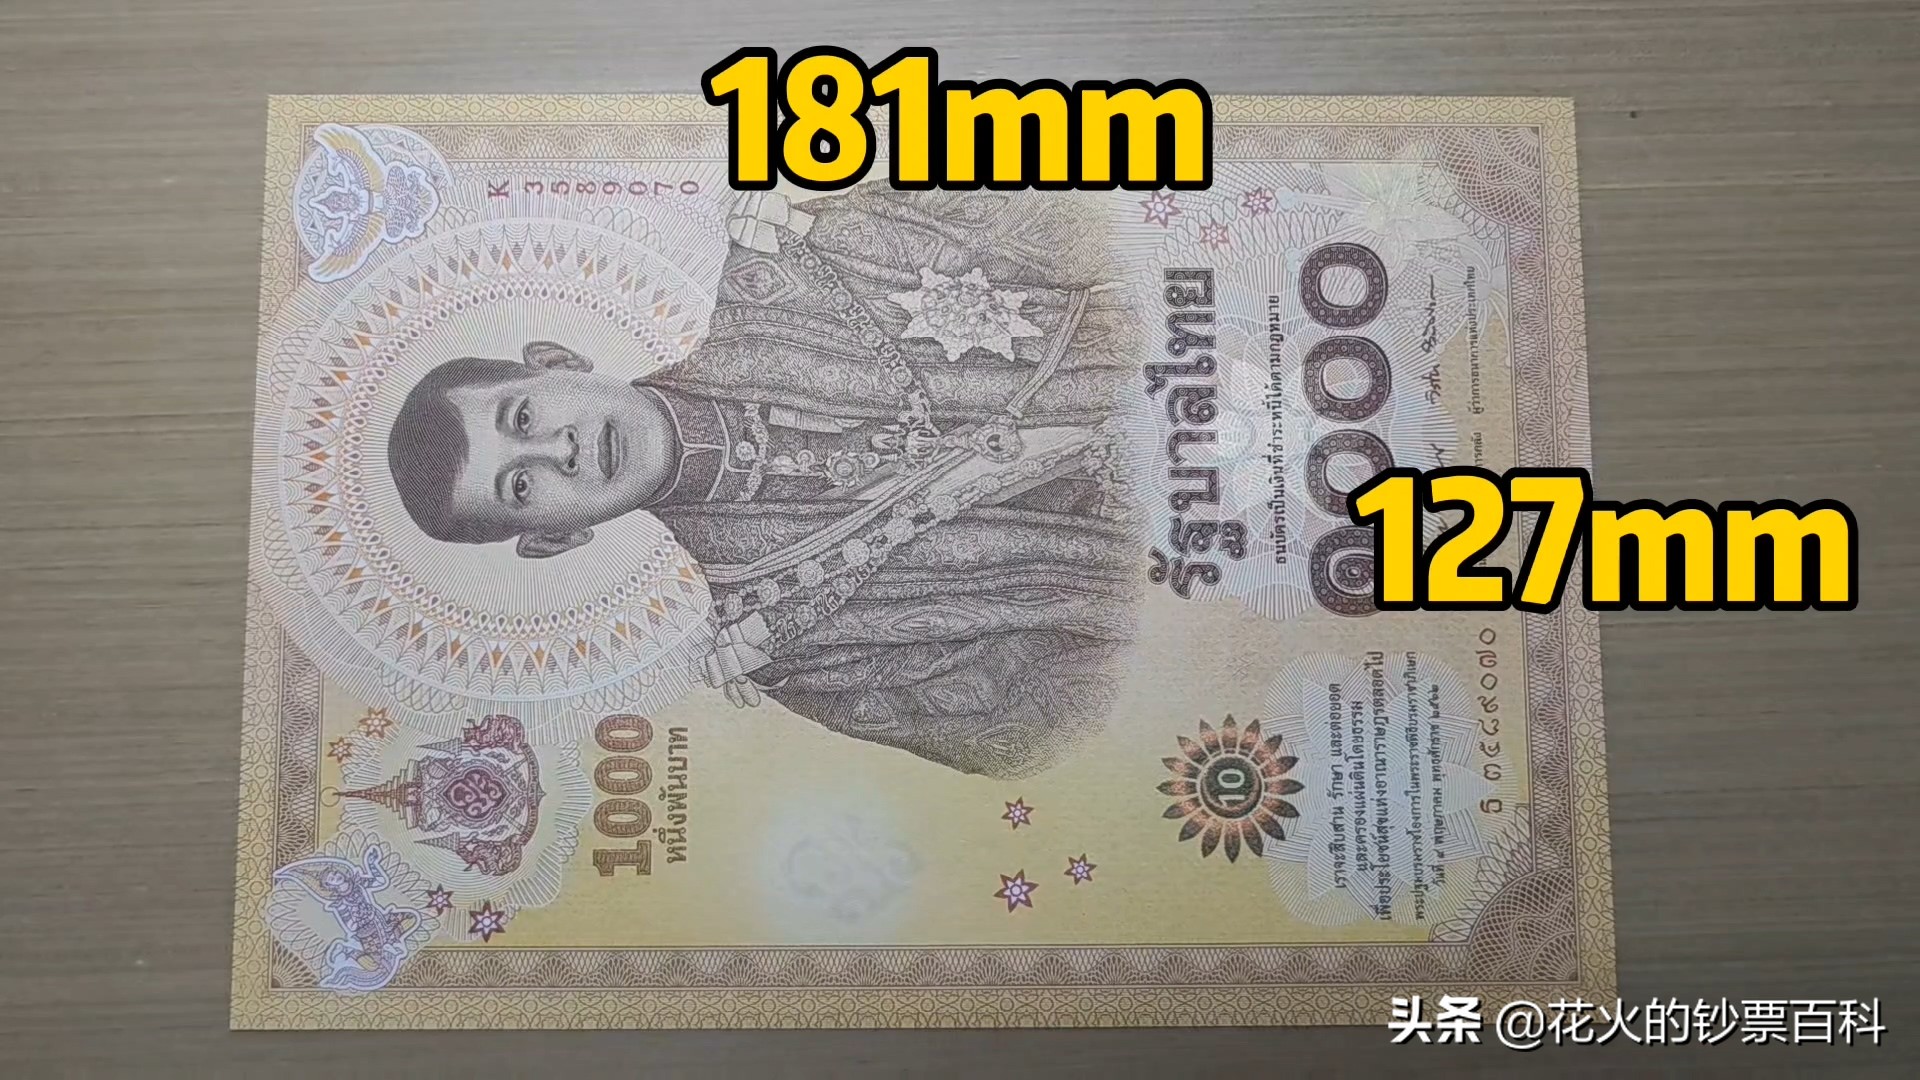 泰铢纸币,老挝纸币 - 伤感说说吧